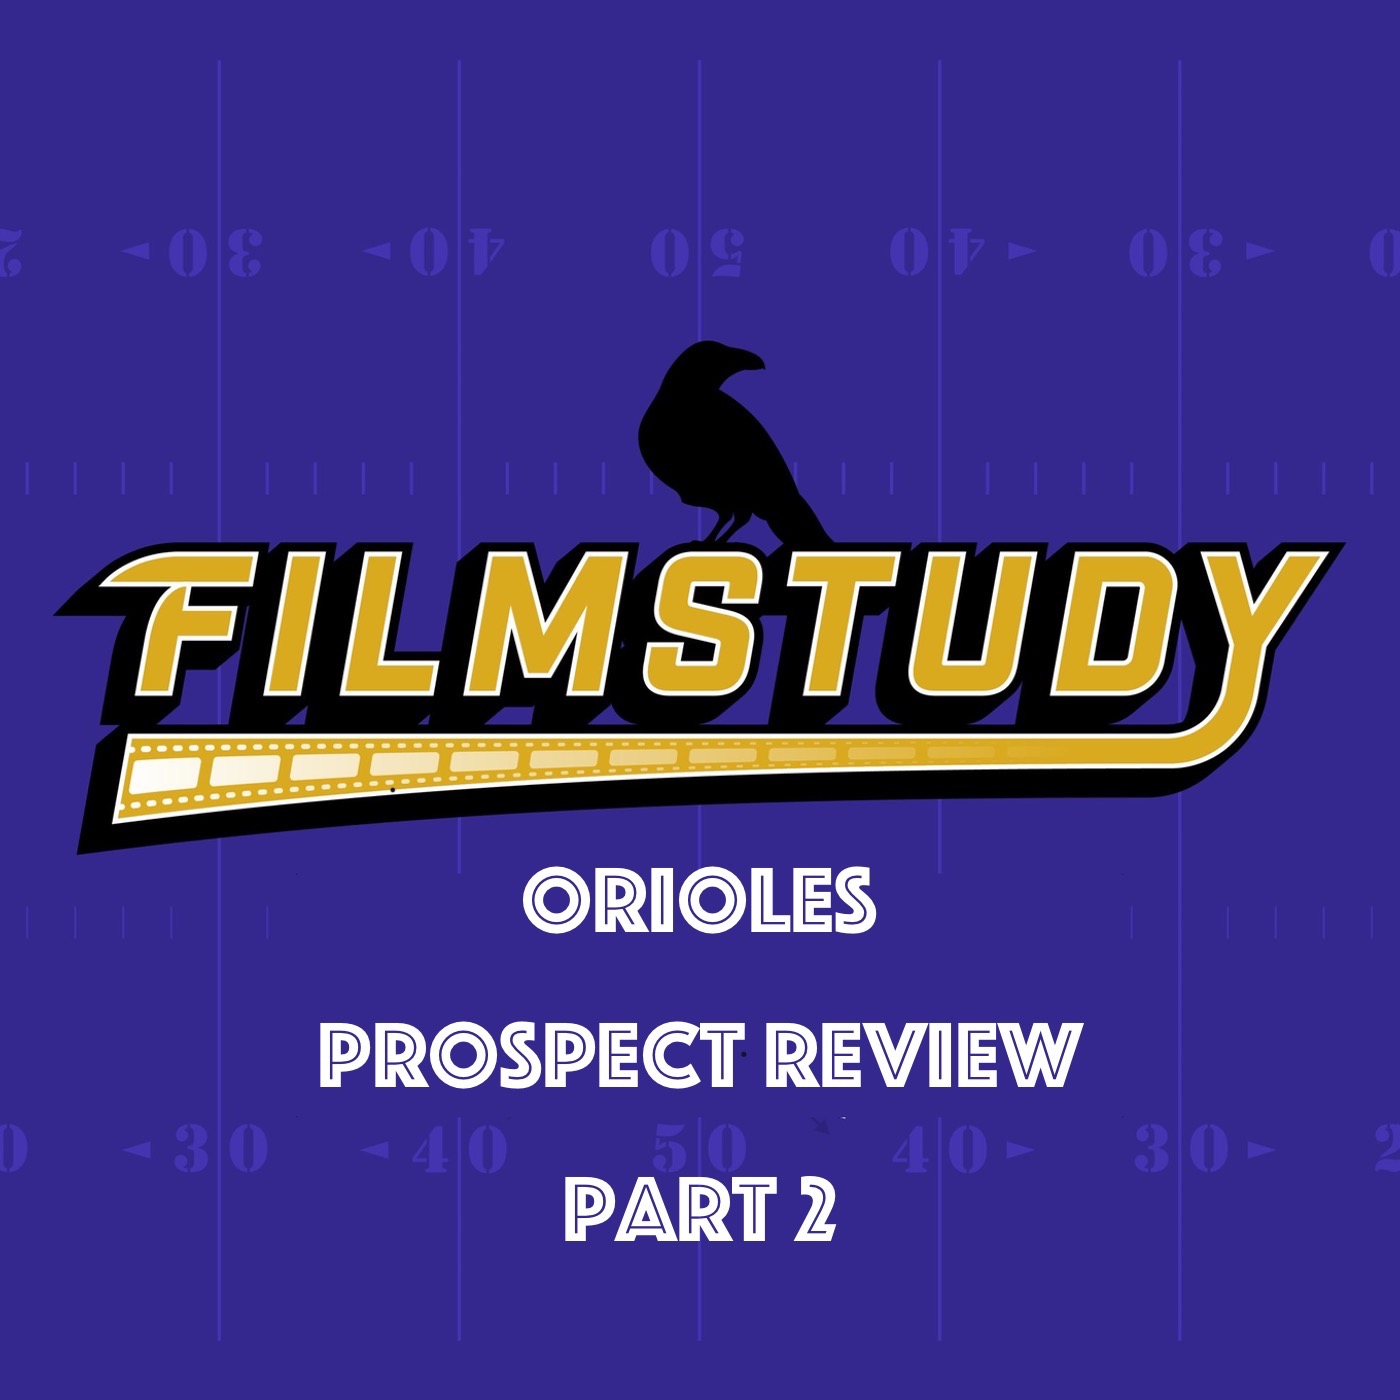 Orioles Prospect Review Part 2